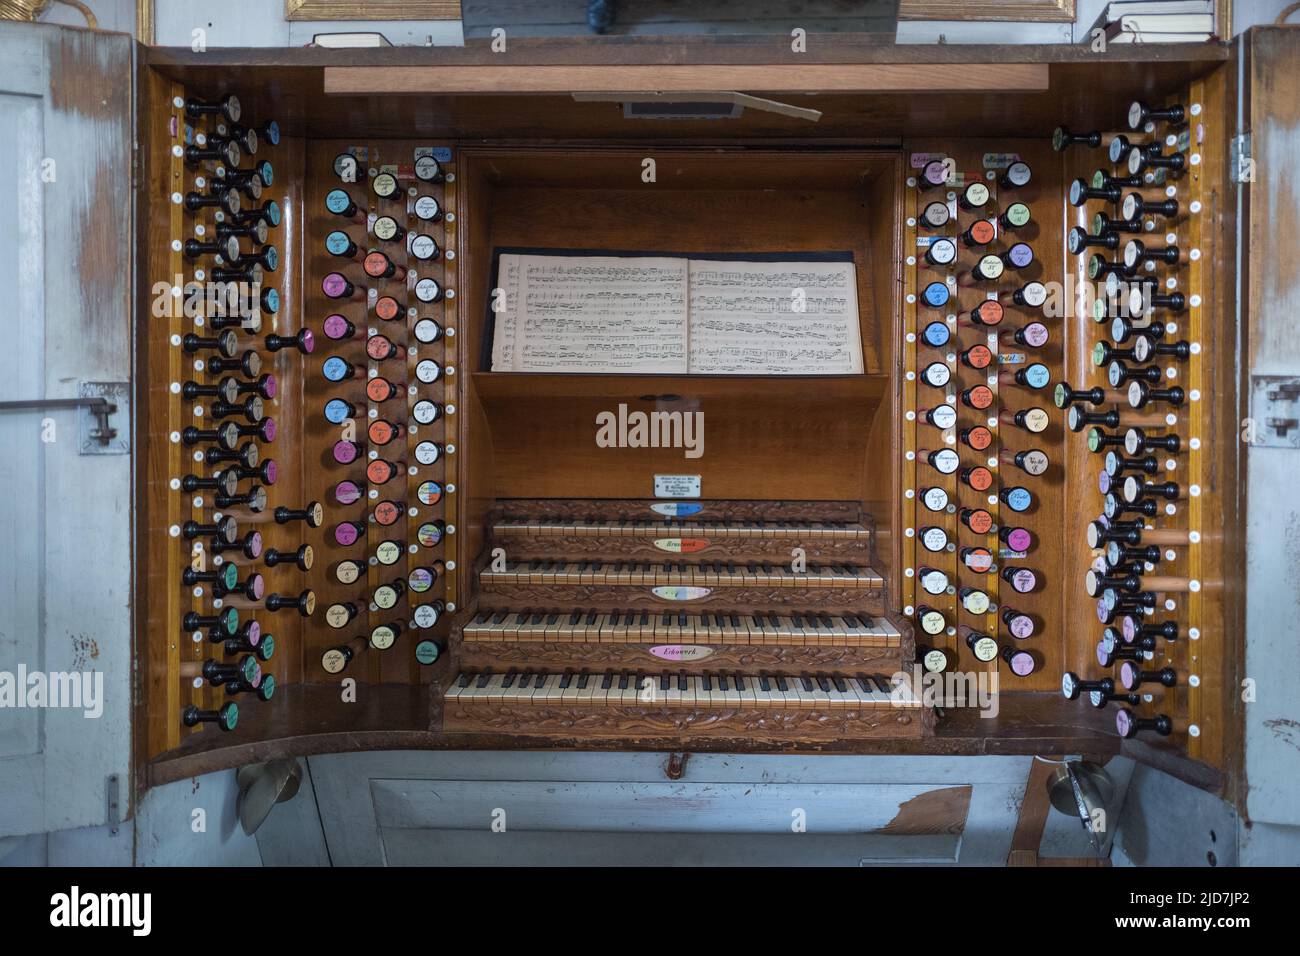 Spielschrank der größten mechanischen Orgel der Welt in Liepaja, Pasaulē lielāko mehānisko ērģeļu spēles kabinets Liepājā, Playing cabinet of the larg Stock Photo